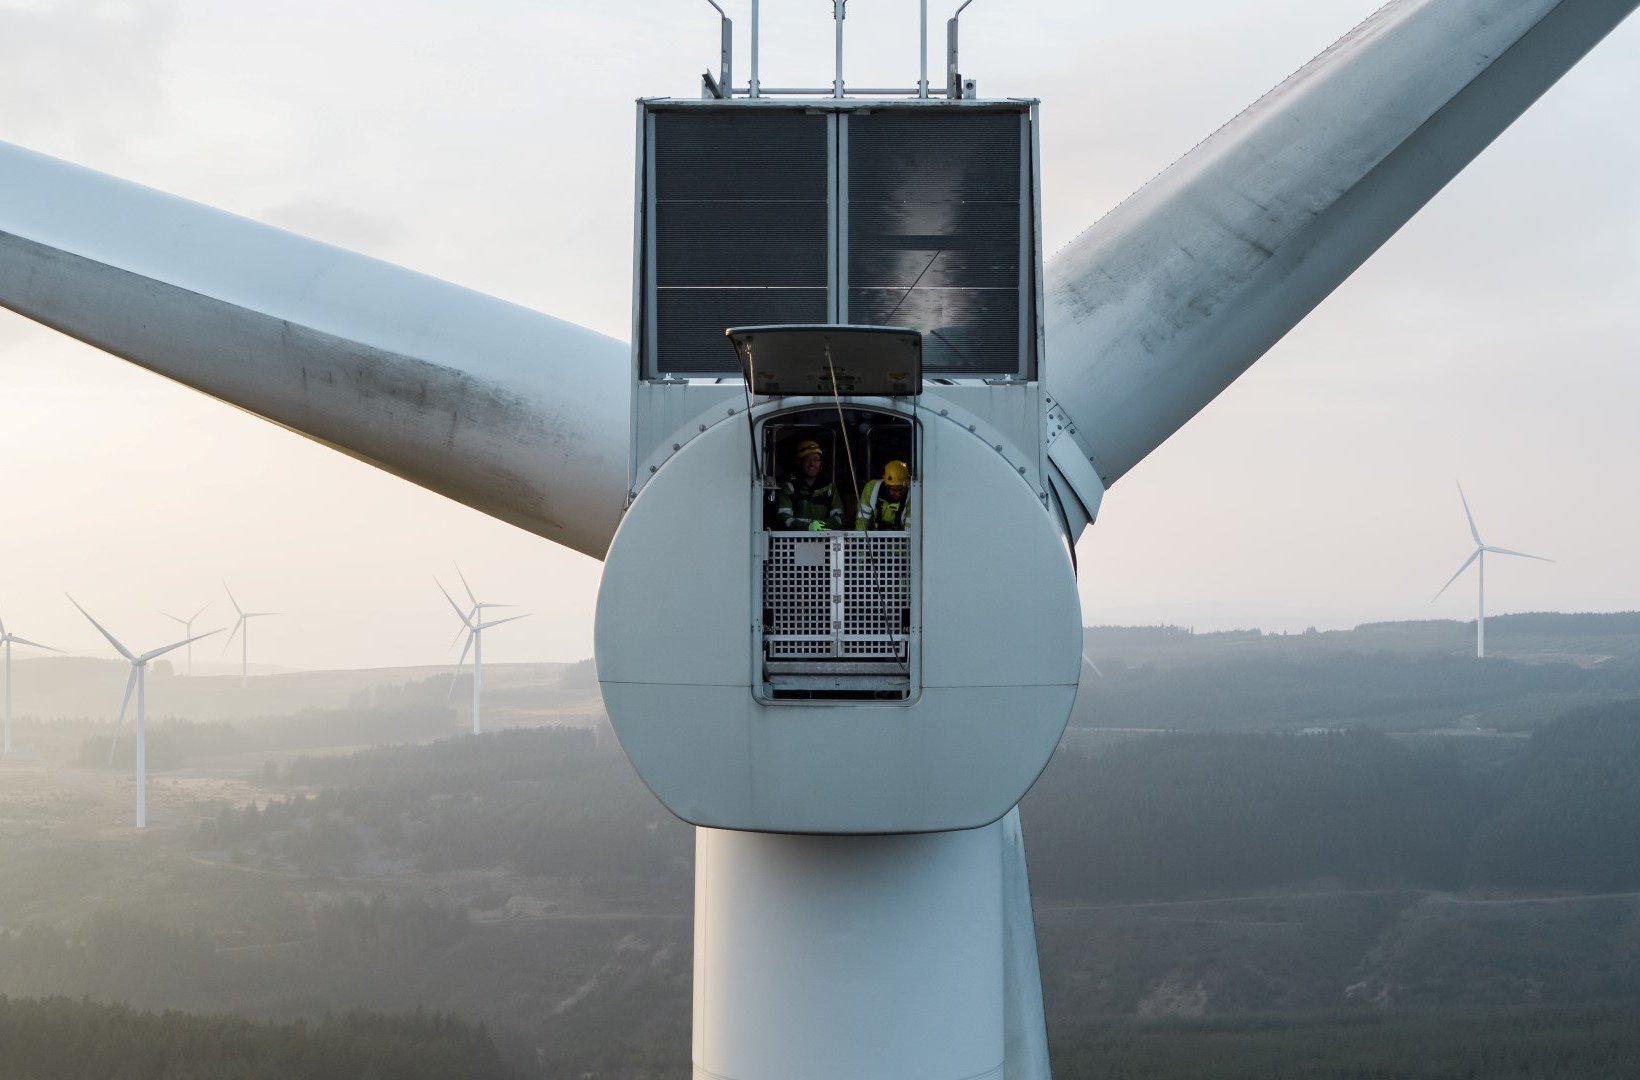 Technicians inside a wind turbine nacelle